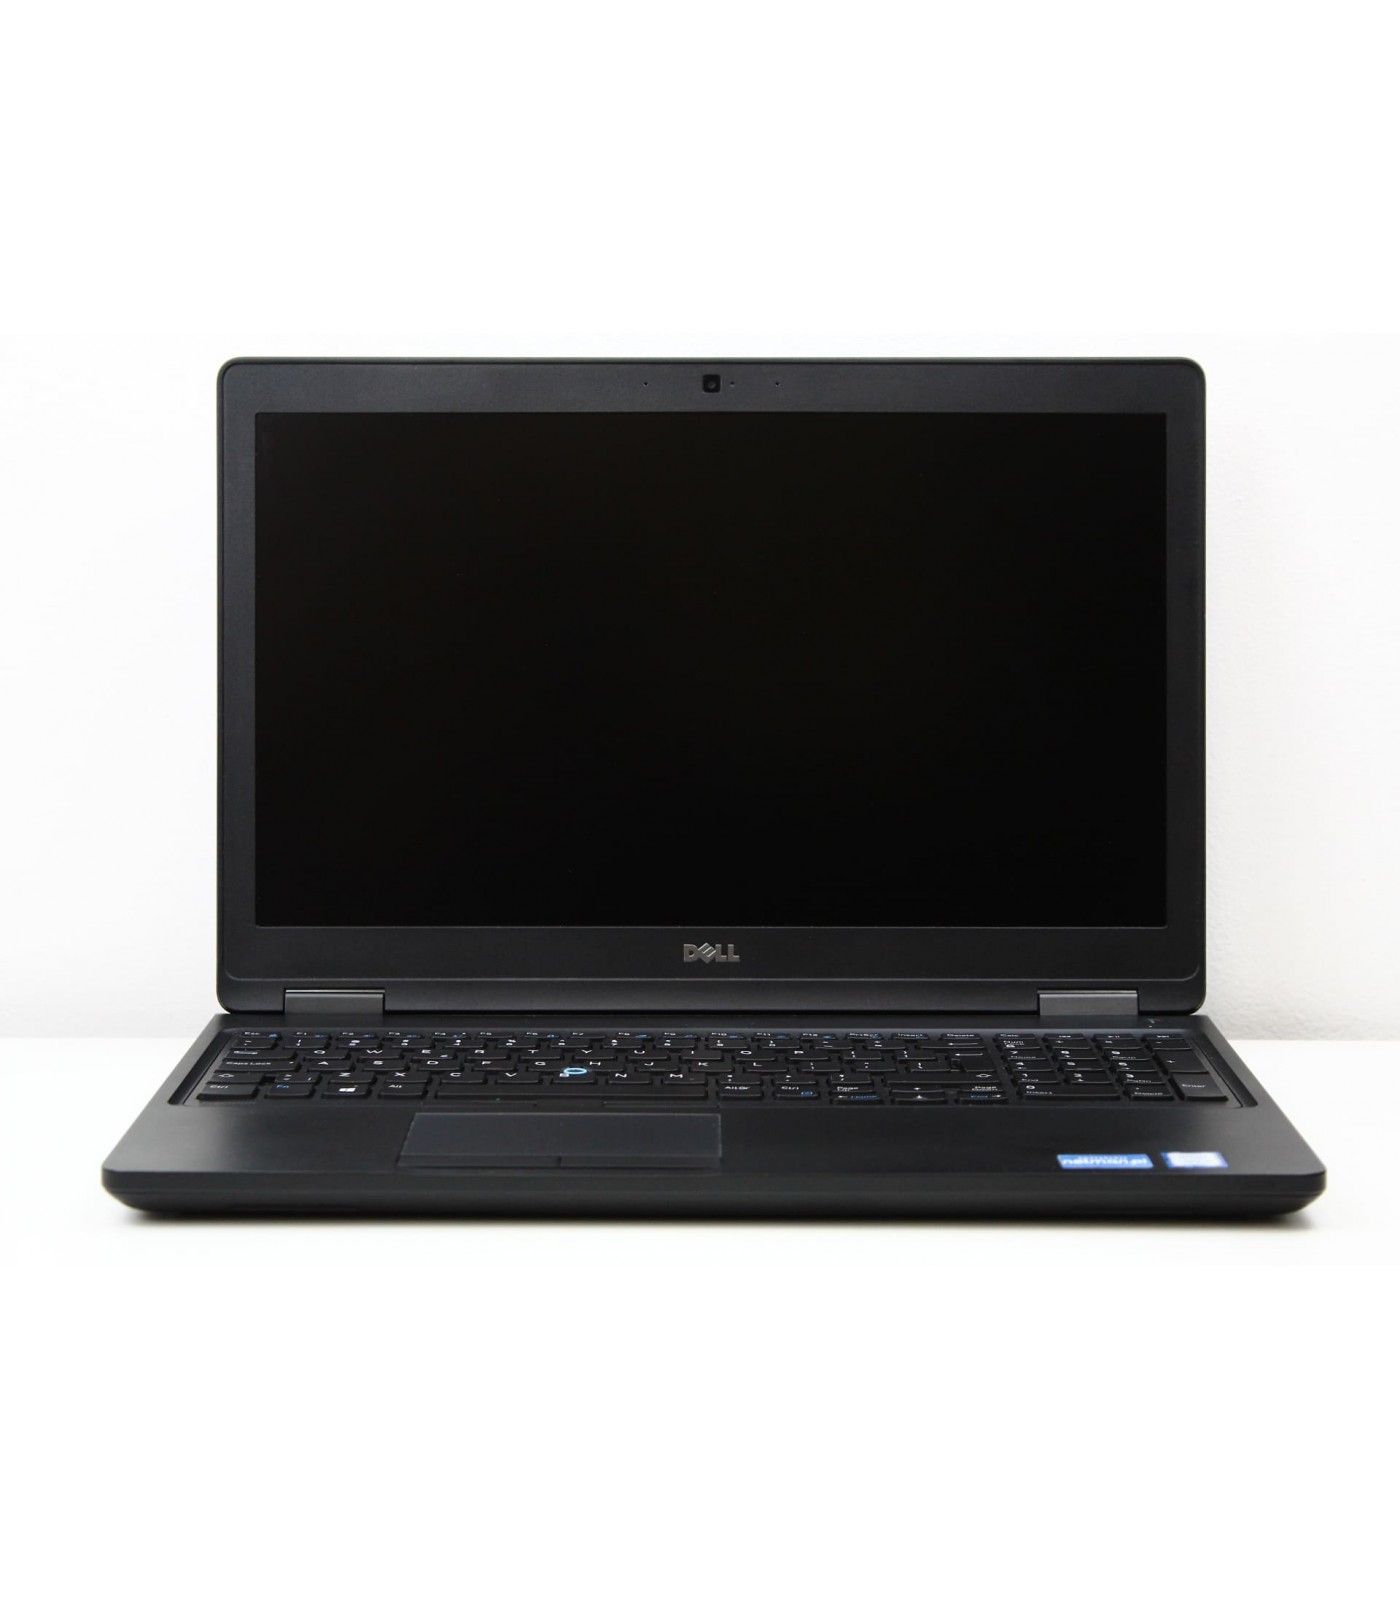 Poleasinowy laptop Dell Precision 3520 z procesorem i7-7700HQ i dedykowana kartą Nvidia Quadro M620 w klasie A